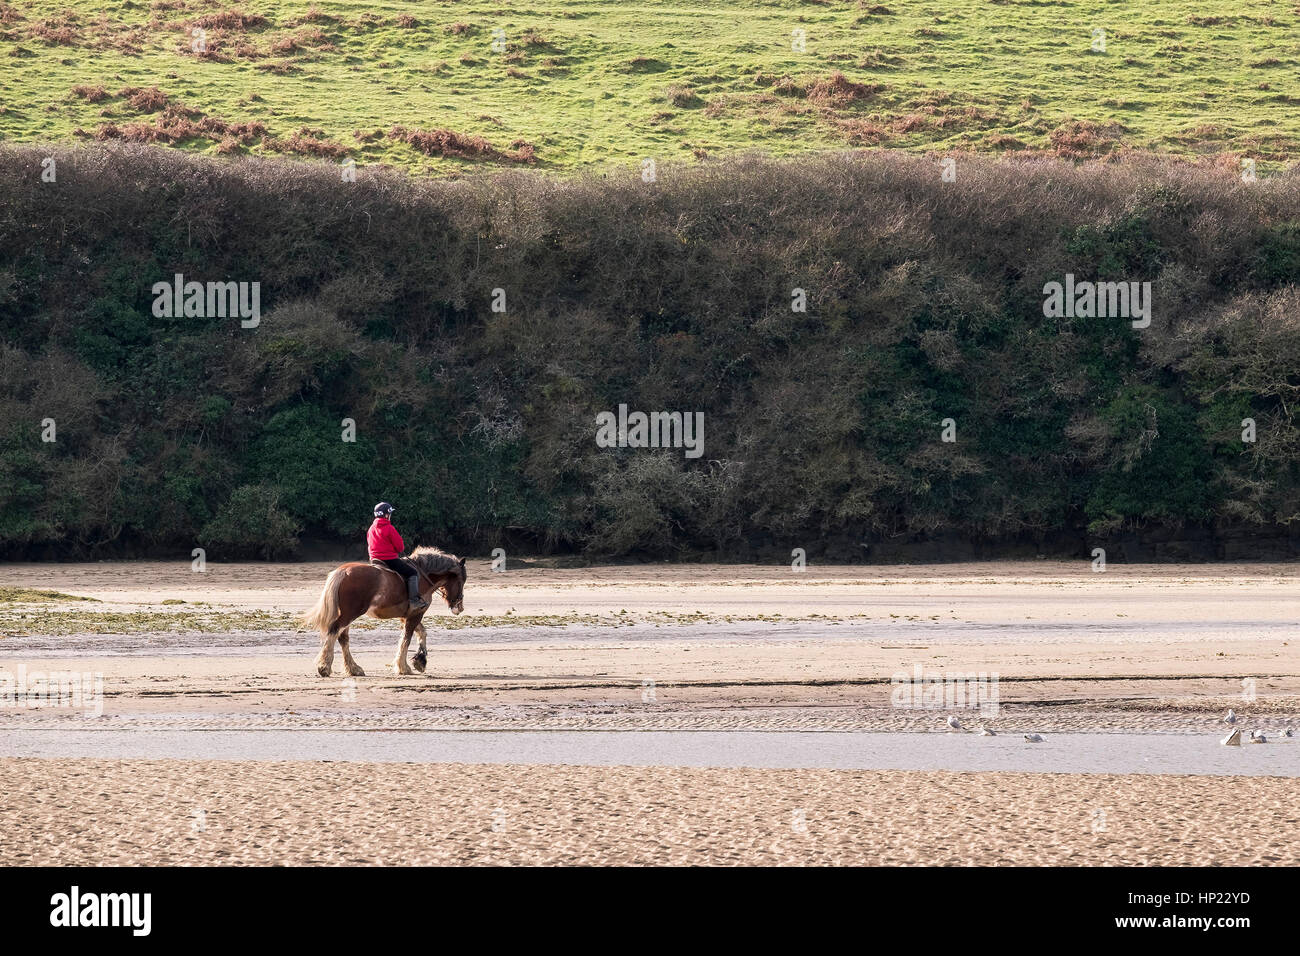 Un cavalier sur un cheval sur les sables de l'estuaire Gannel à marée basse. Newquay, Cornwall, England, UK. Banque D'Images